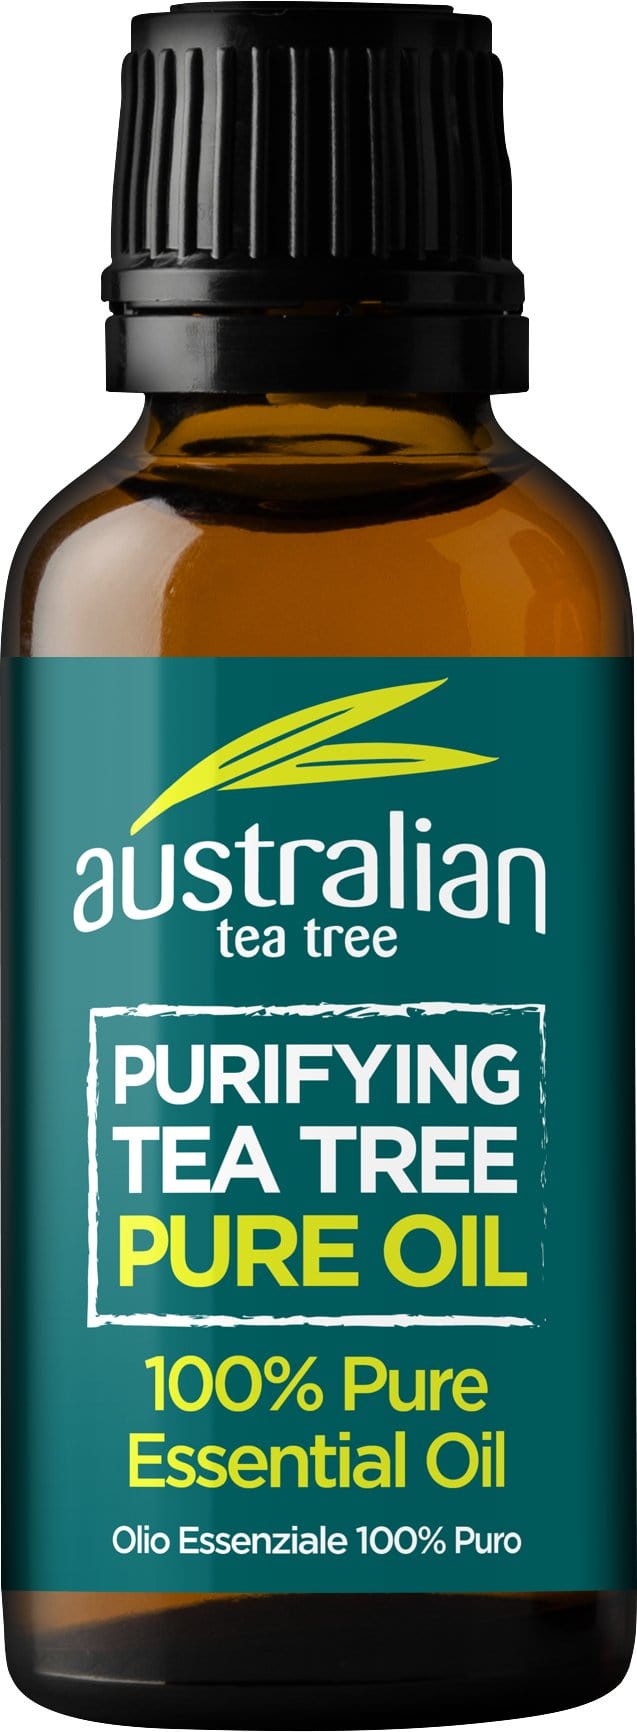 Australijskie drzewo herbaciane Oczyszczający olejek z drzewa herbacianego, 25ml